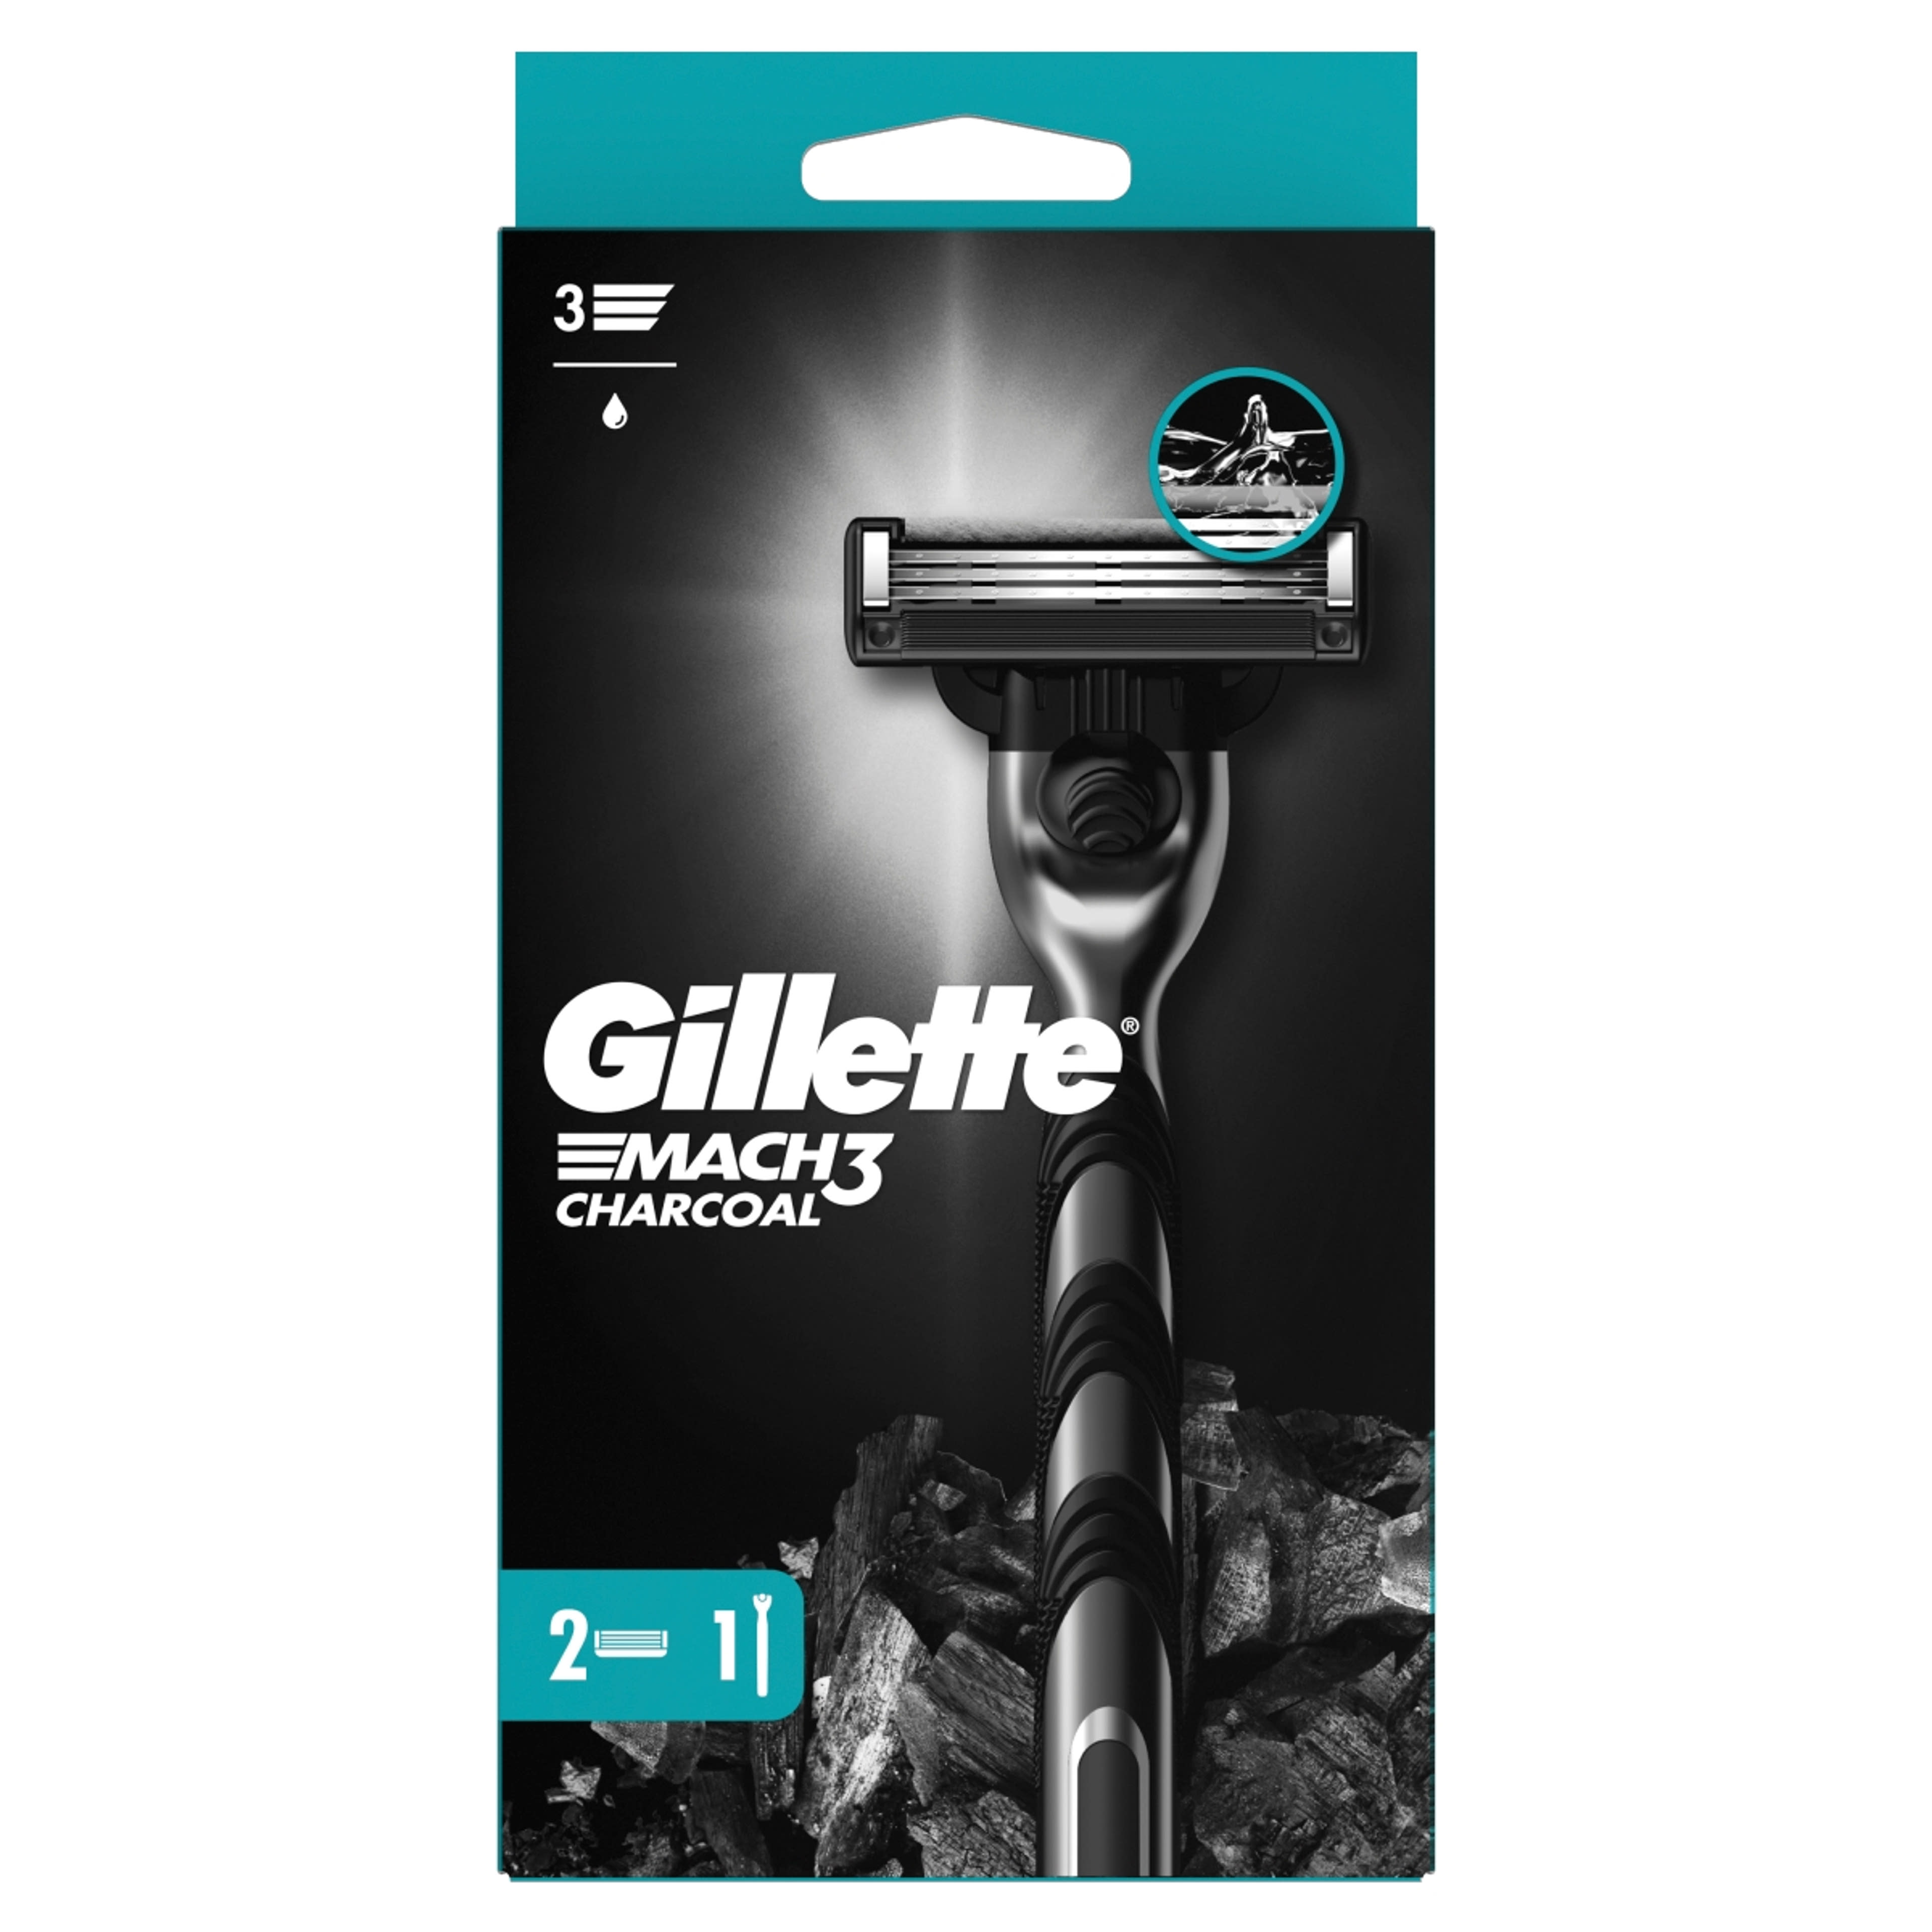 Gillette Mach3 Charcoal borotva készülék + 2 db betét - 1 db